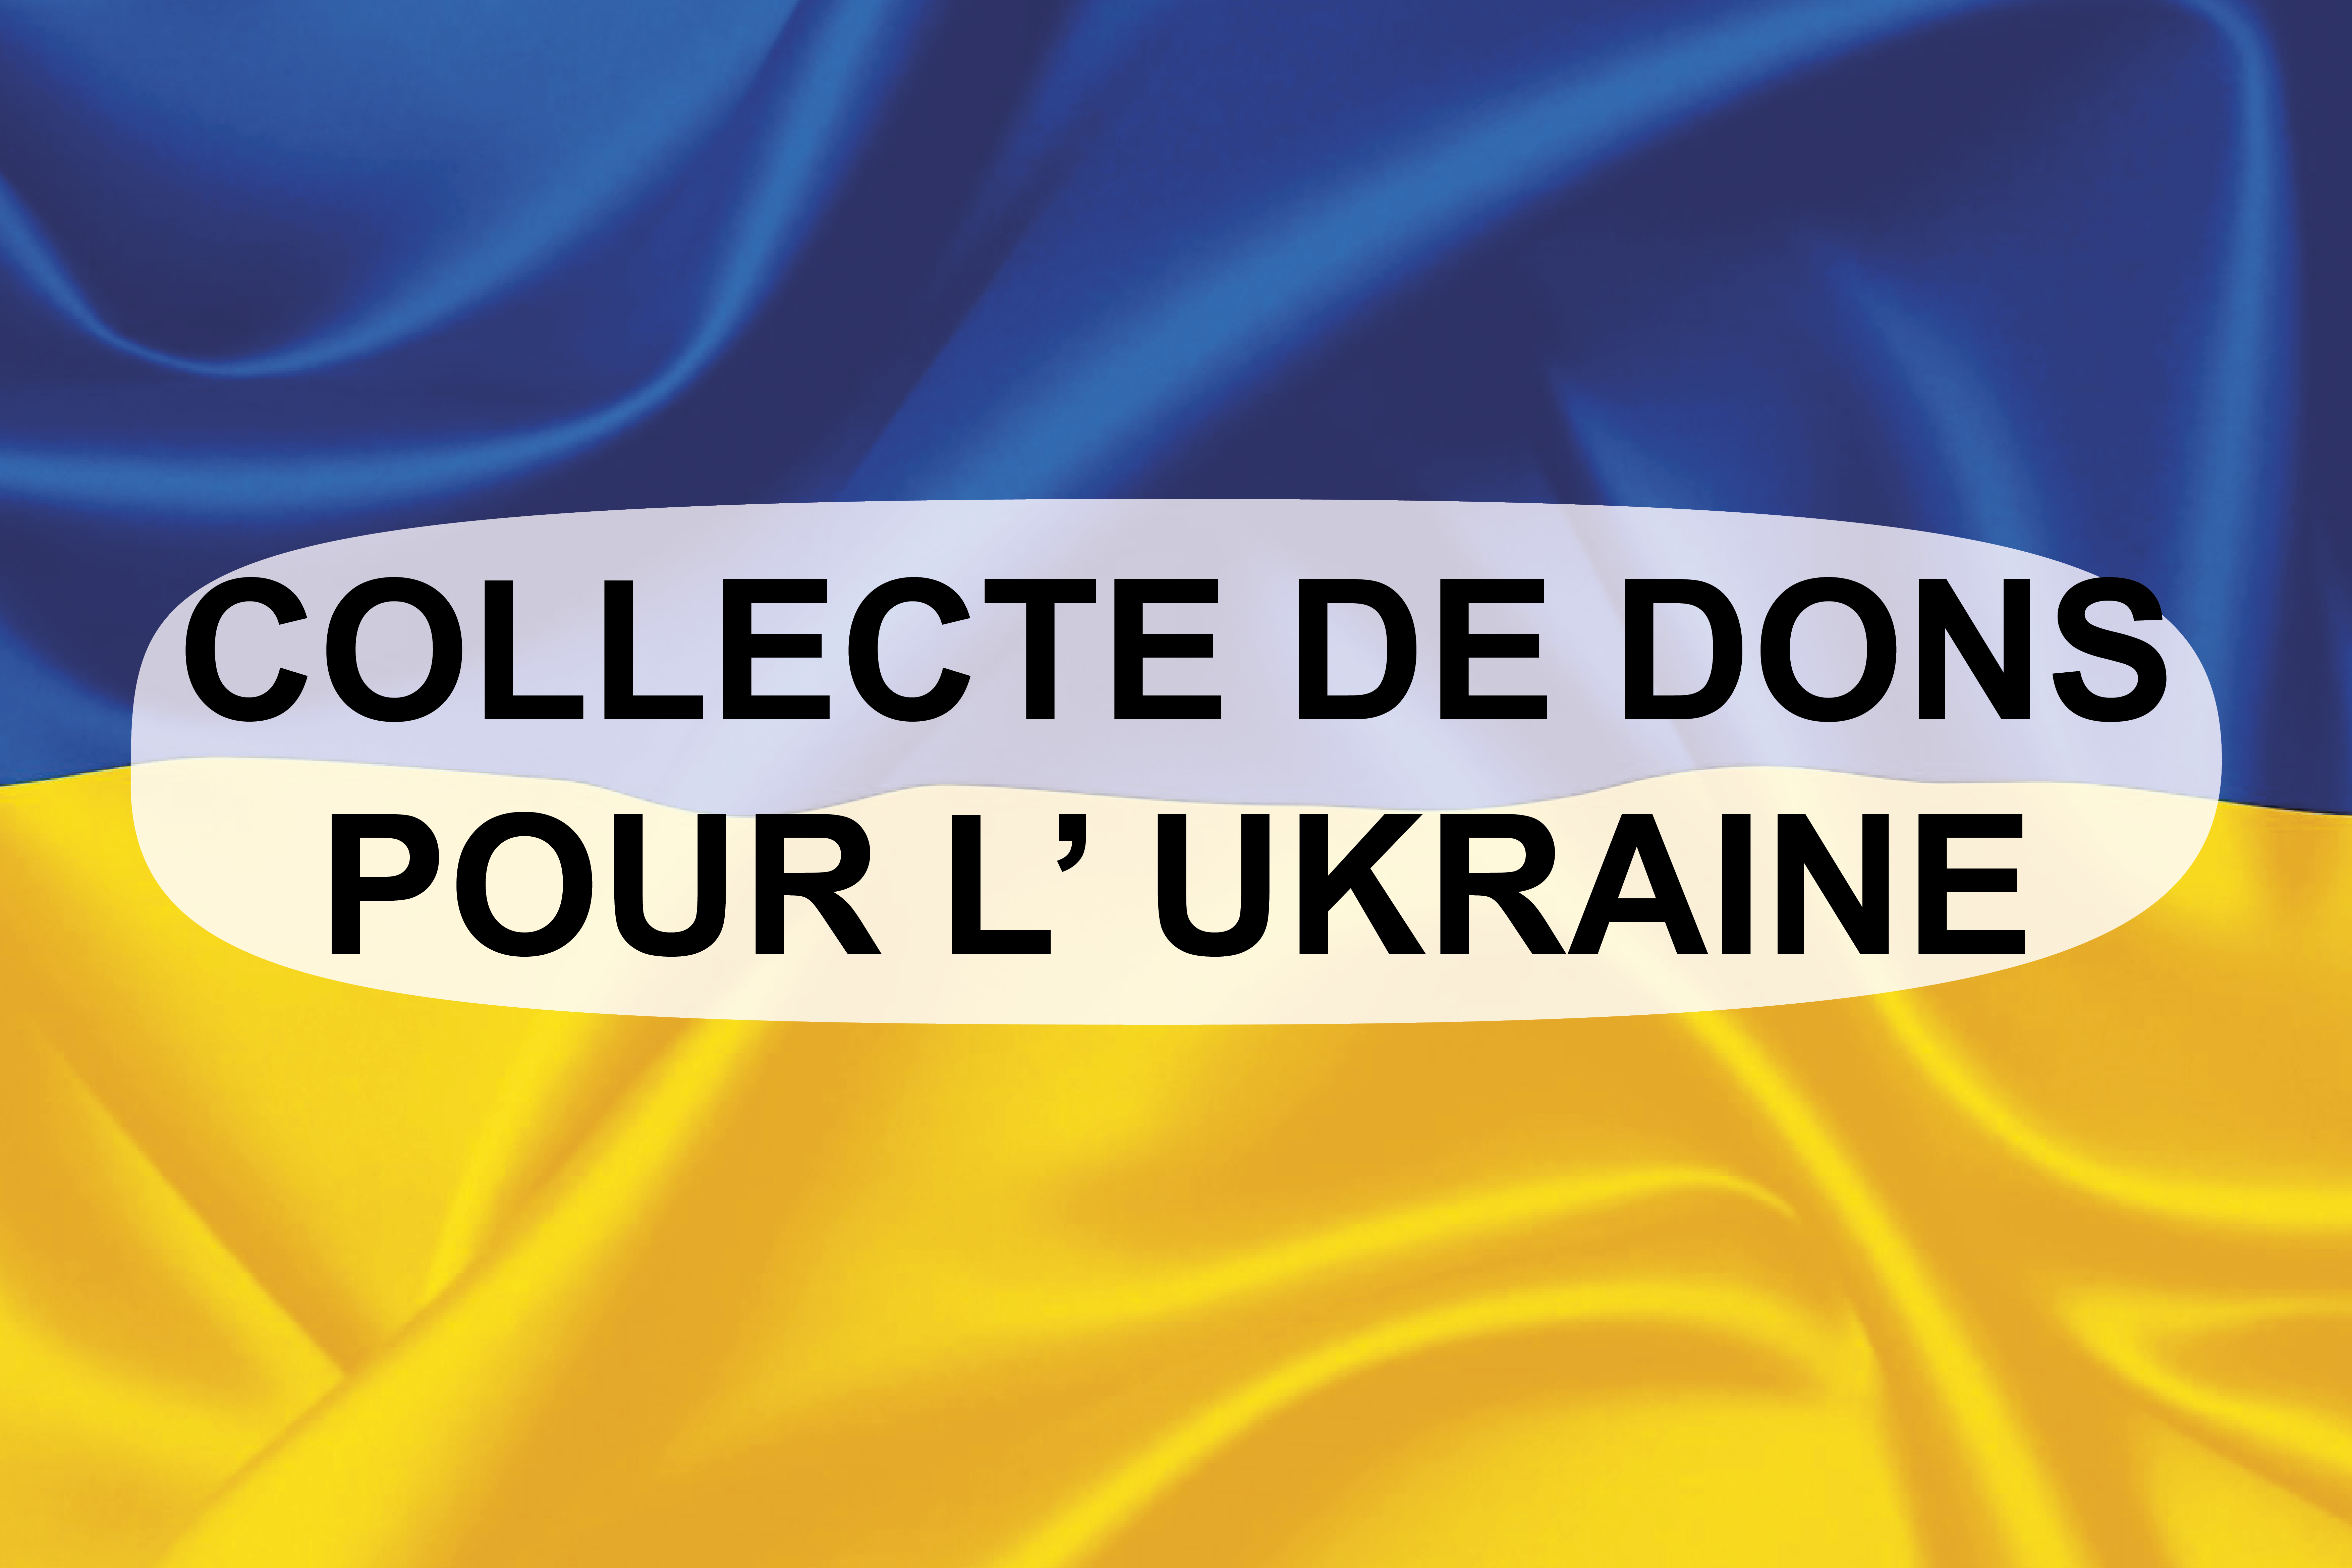 COLLECTE DE DONS POUR L’UKRAINE